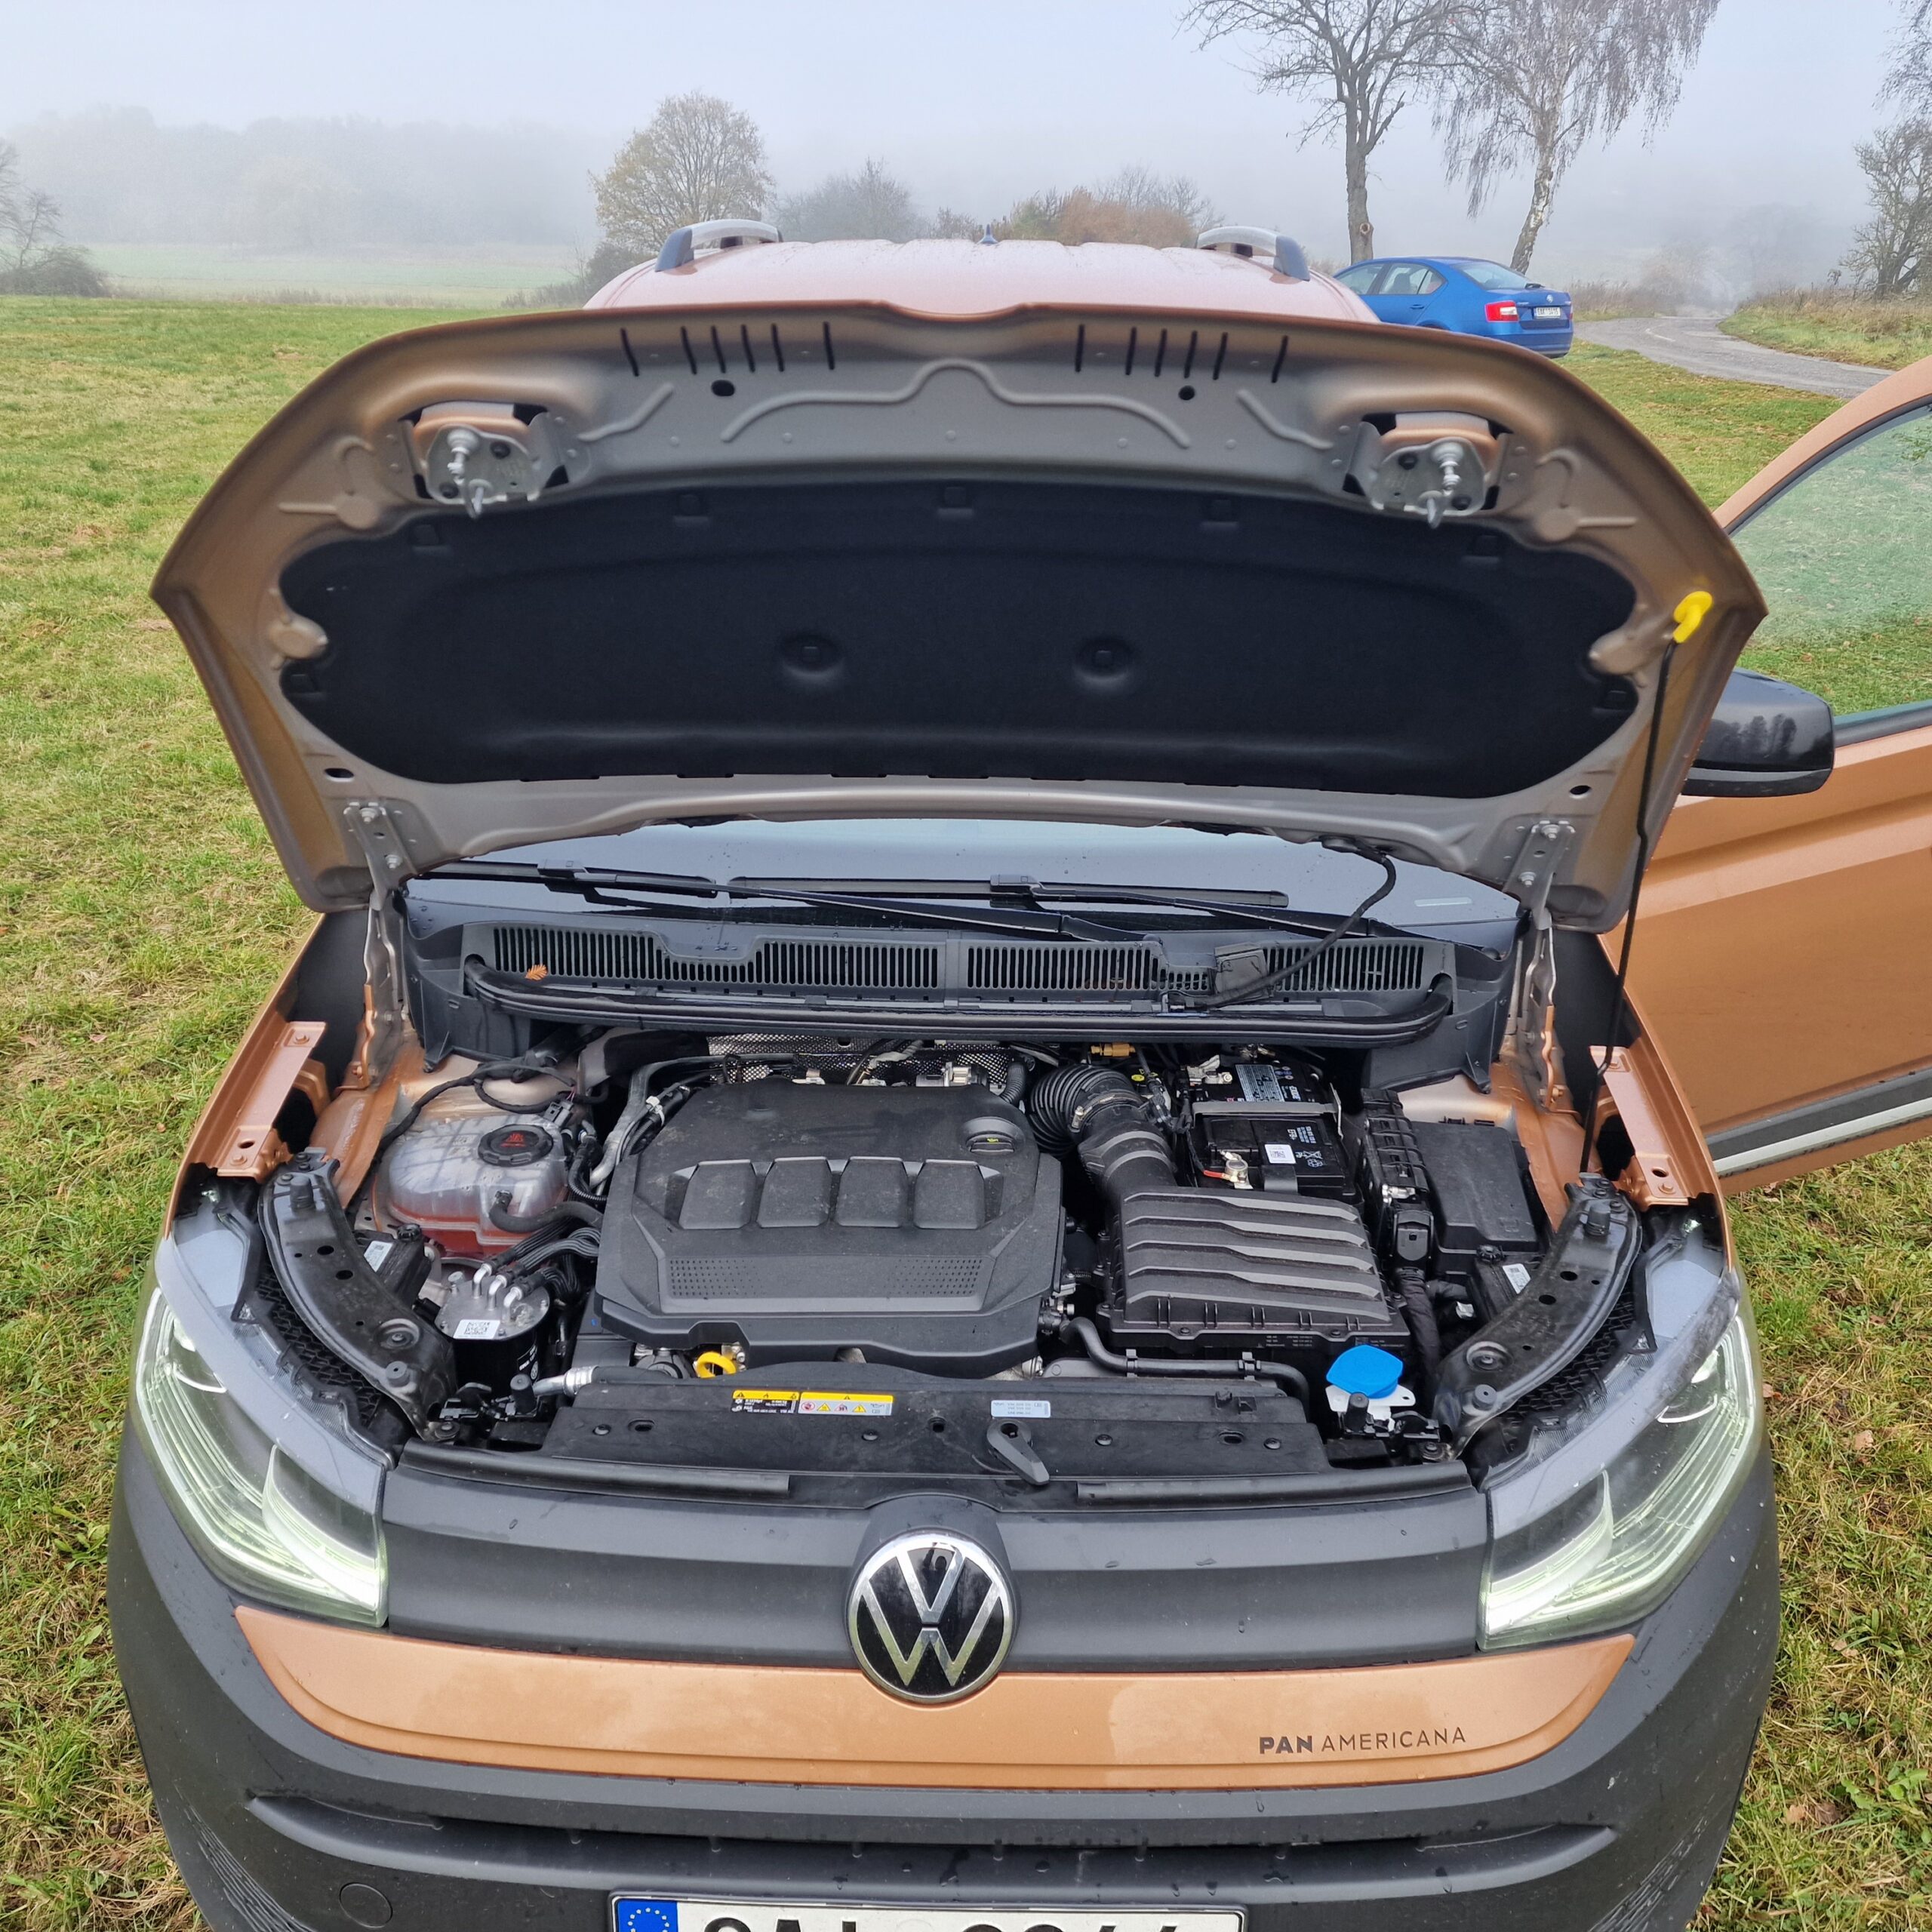 Volkswagen Caddy PanAmericana motor 2,0 (foto Jan Švandrlík)